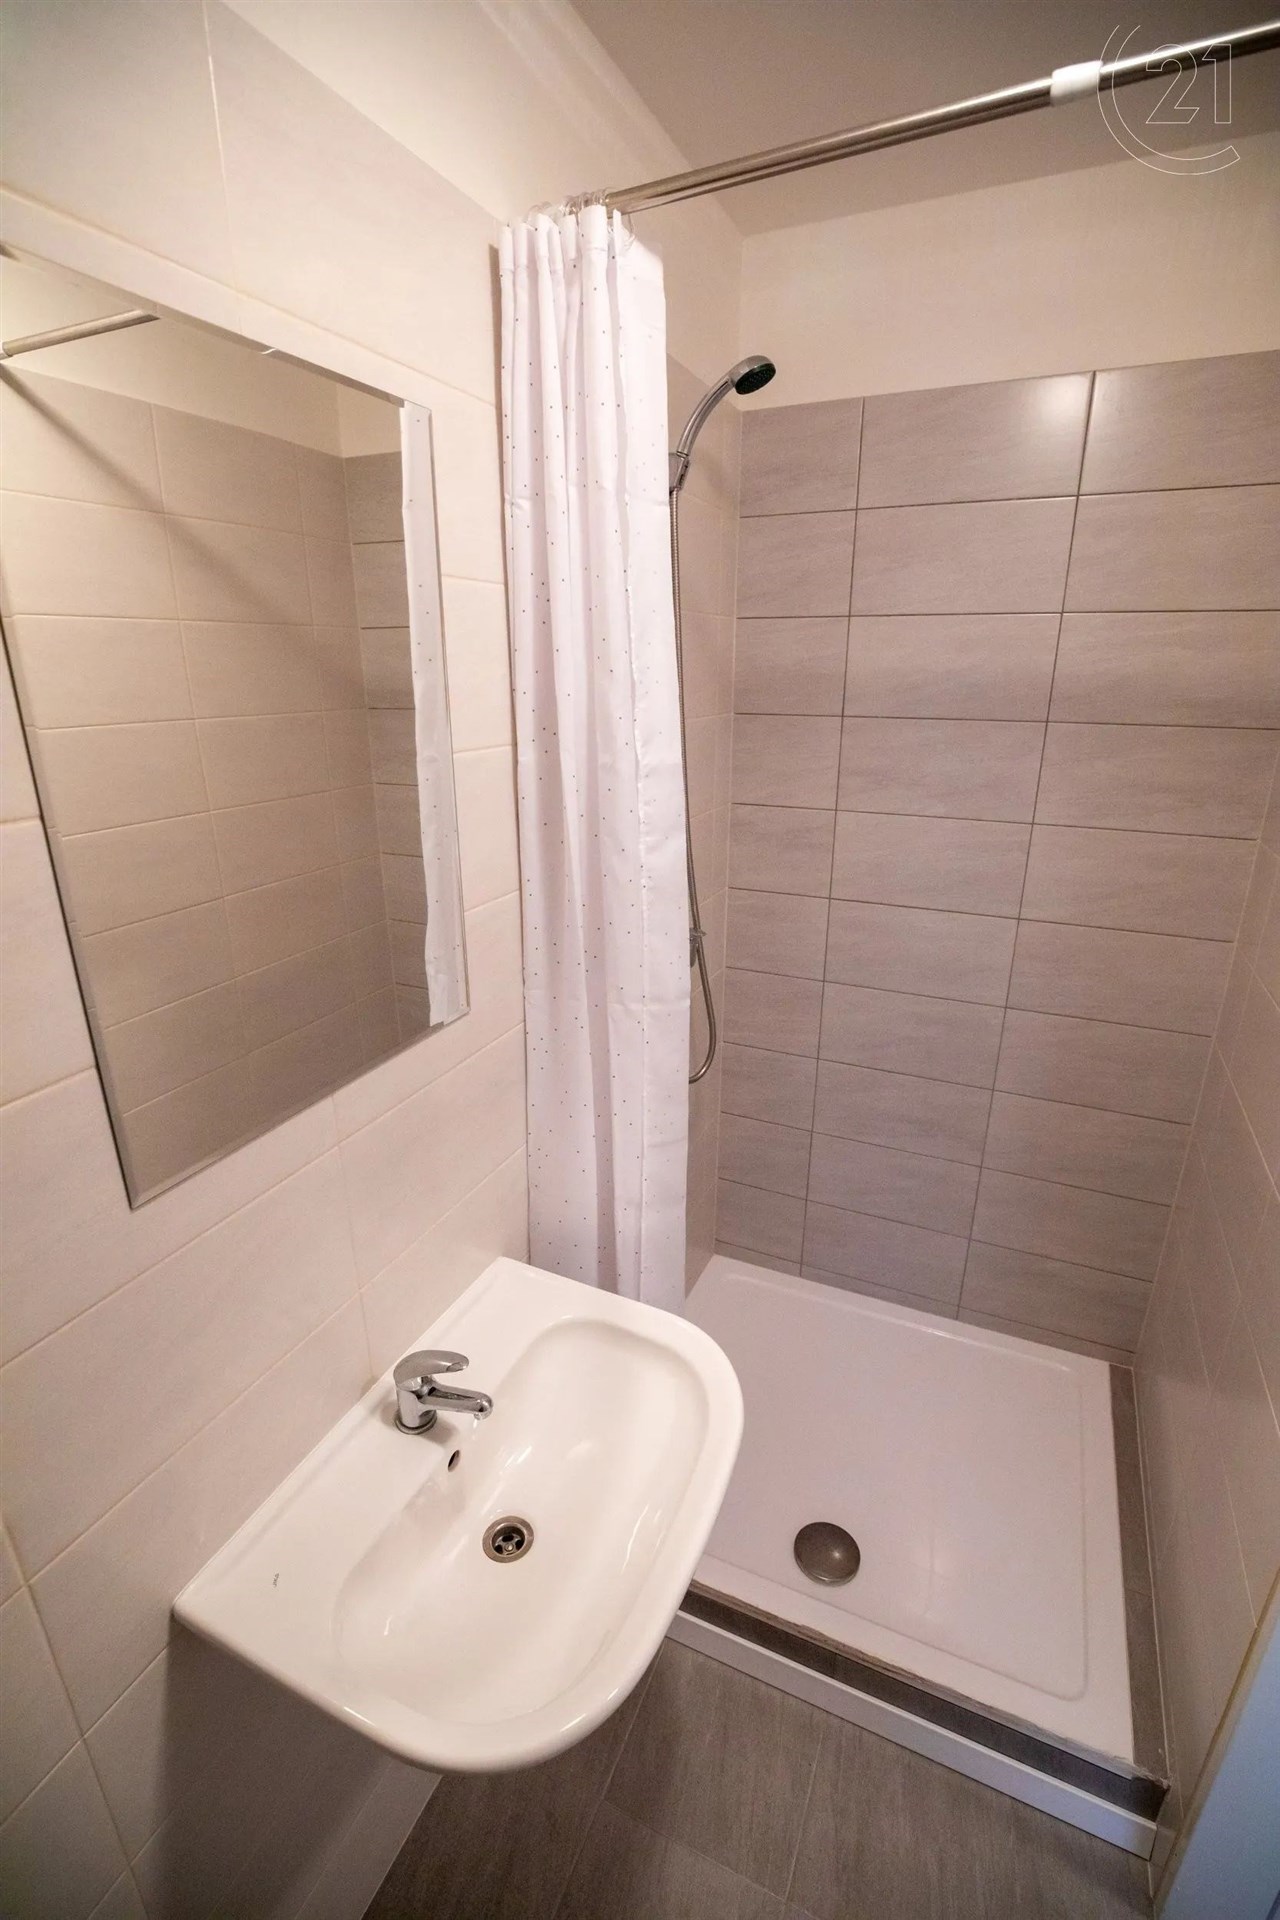 vana s stěna dlaždic, sprcha, kachličková podlaha, a zrcadlo